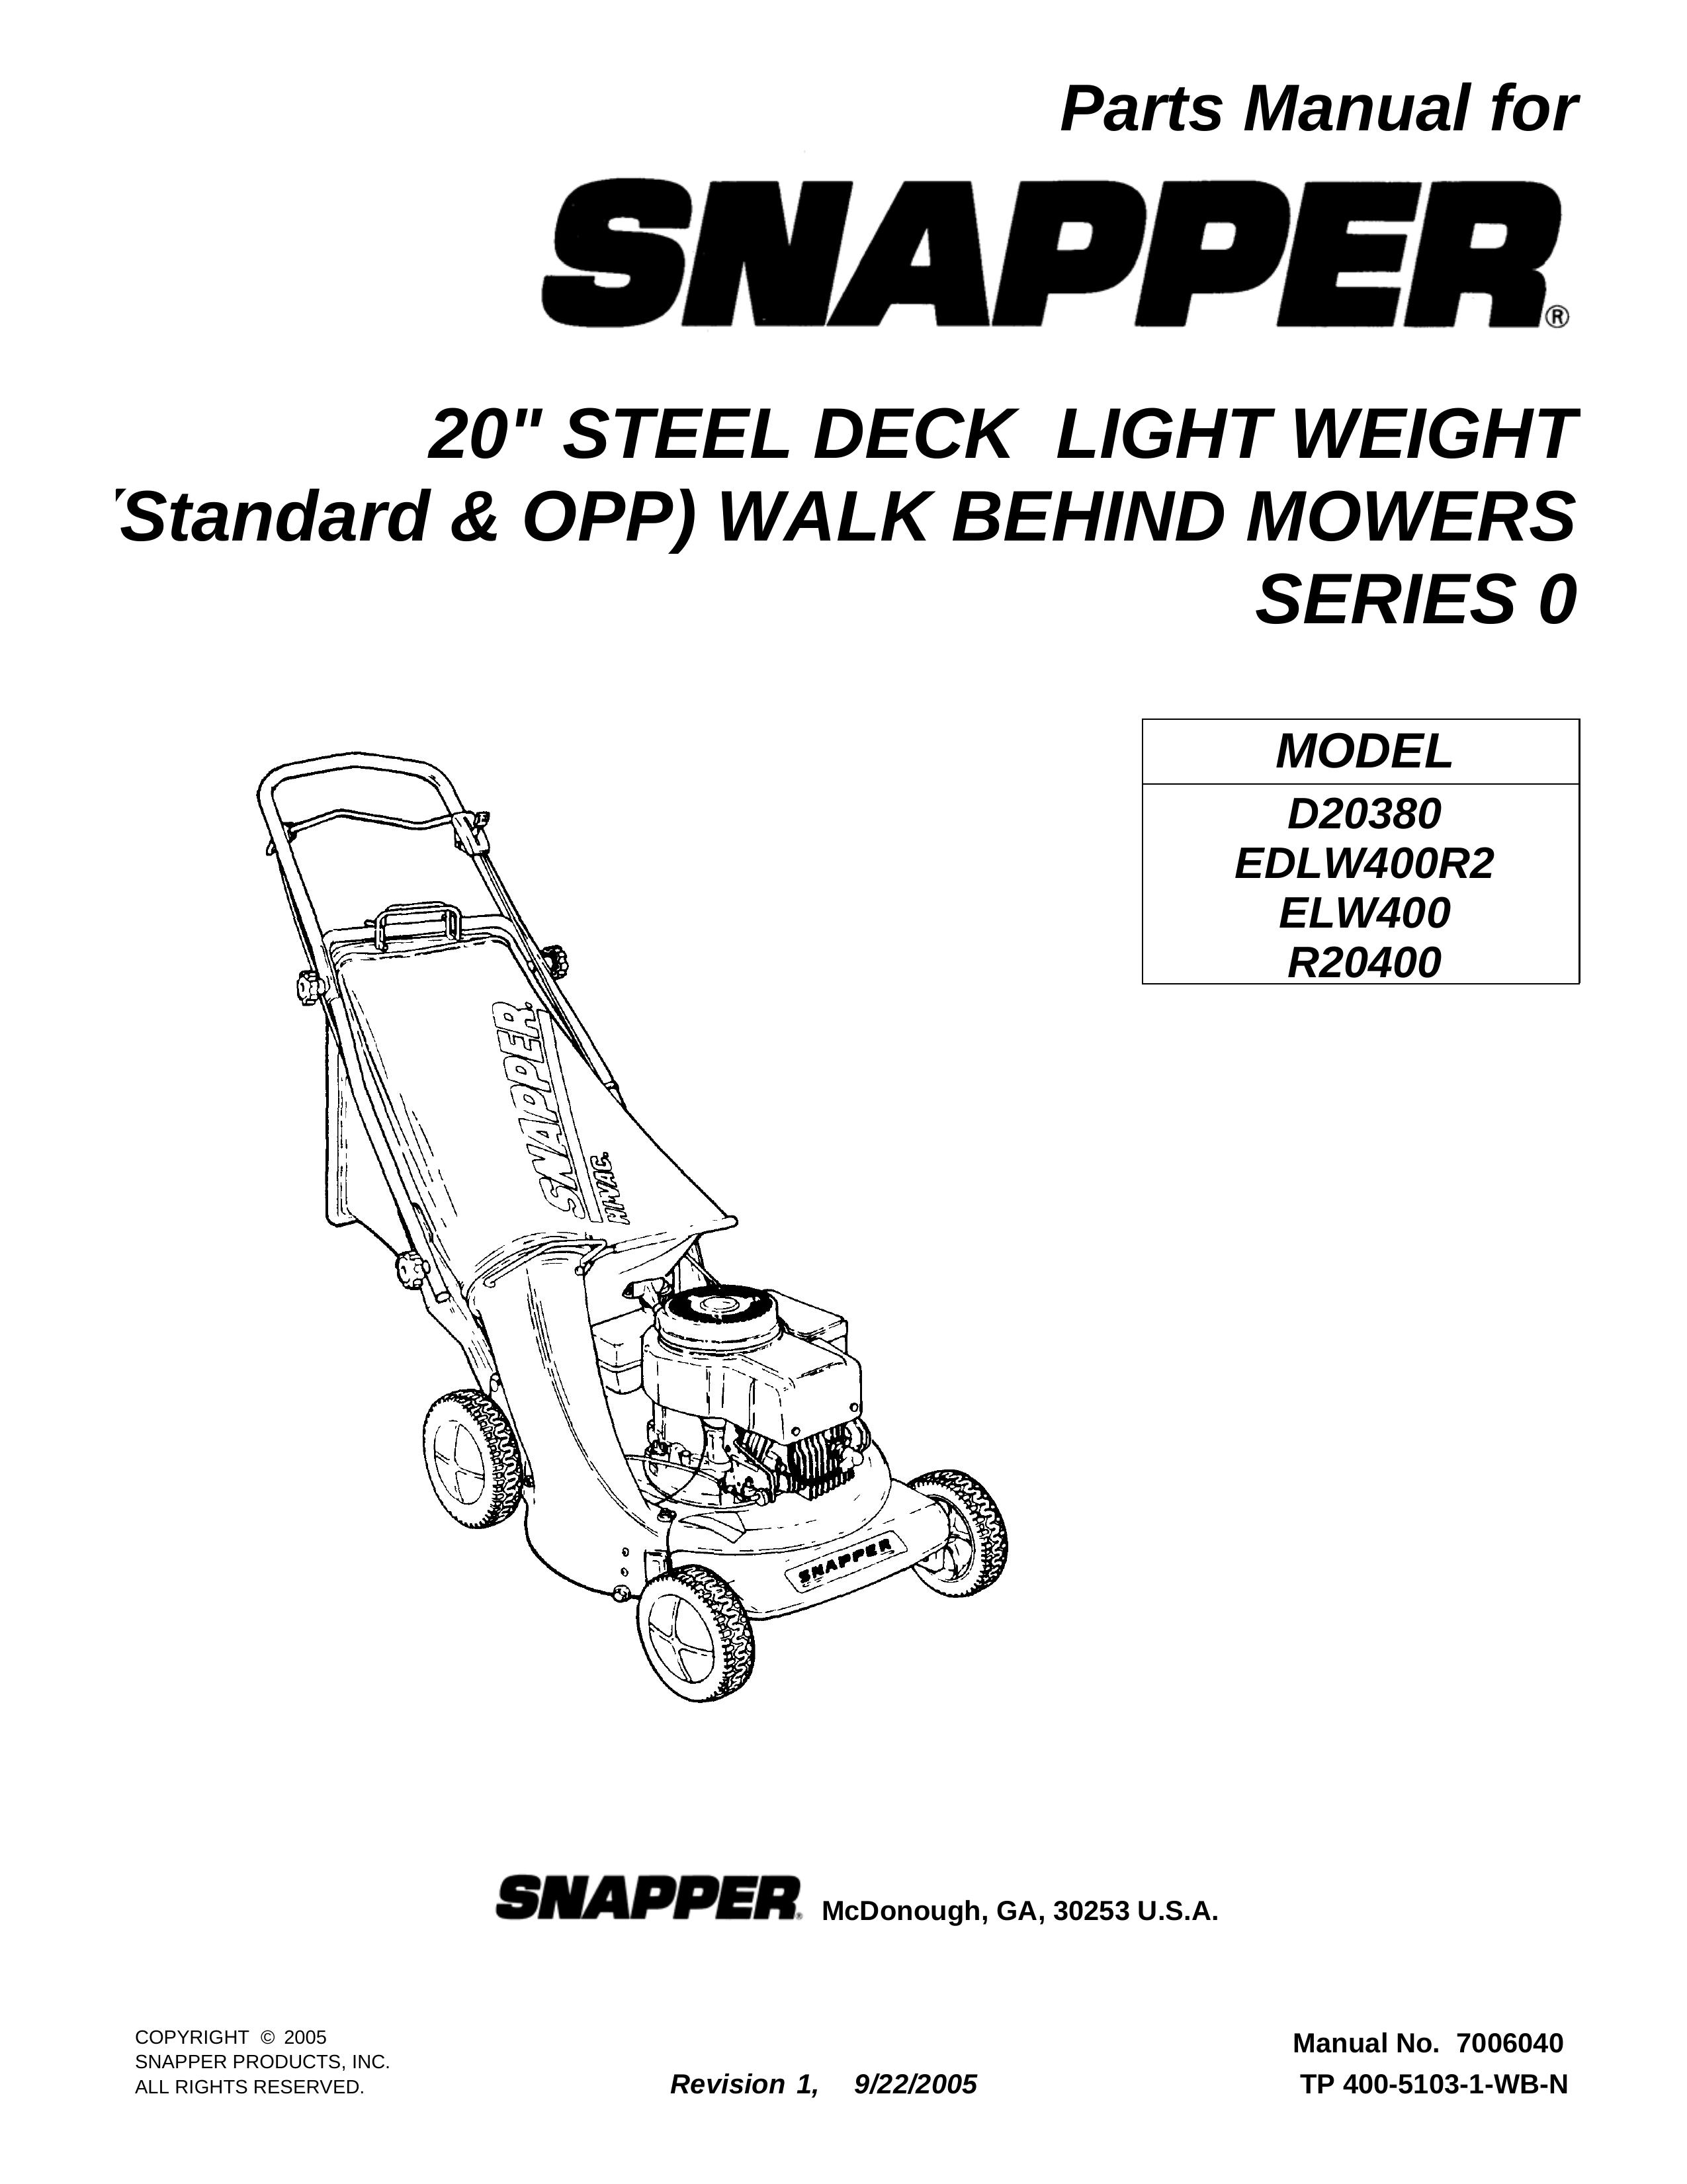 Snapper EDLW400R2 Trimmer User Manual